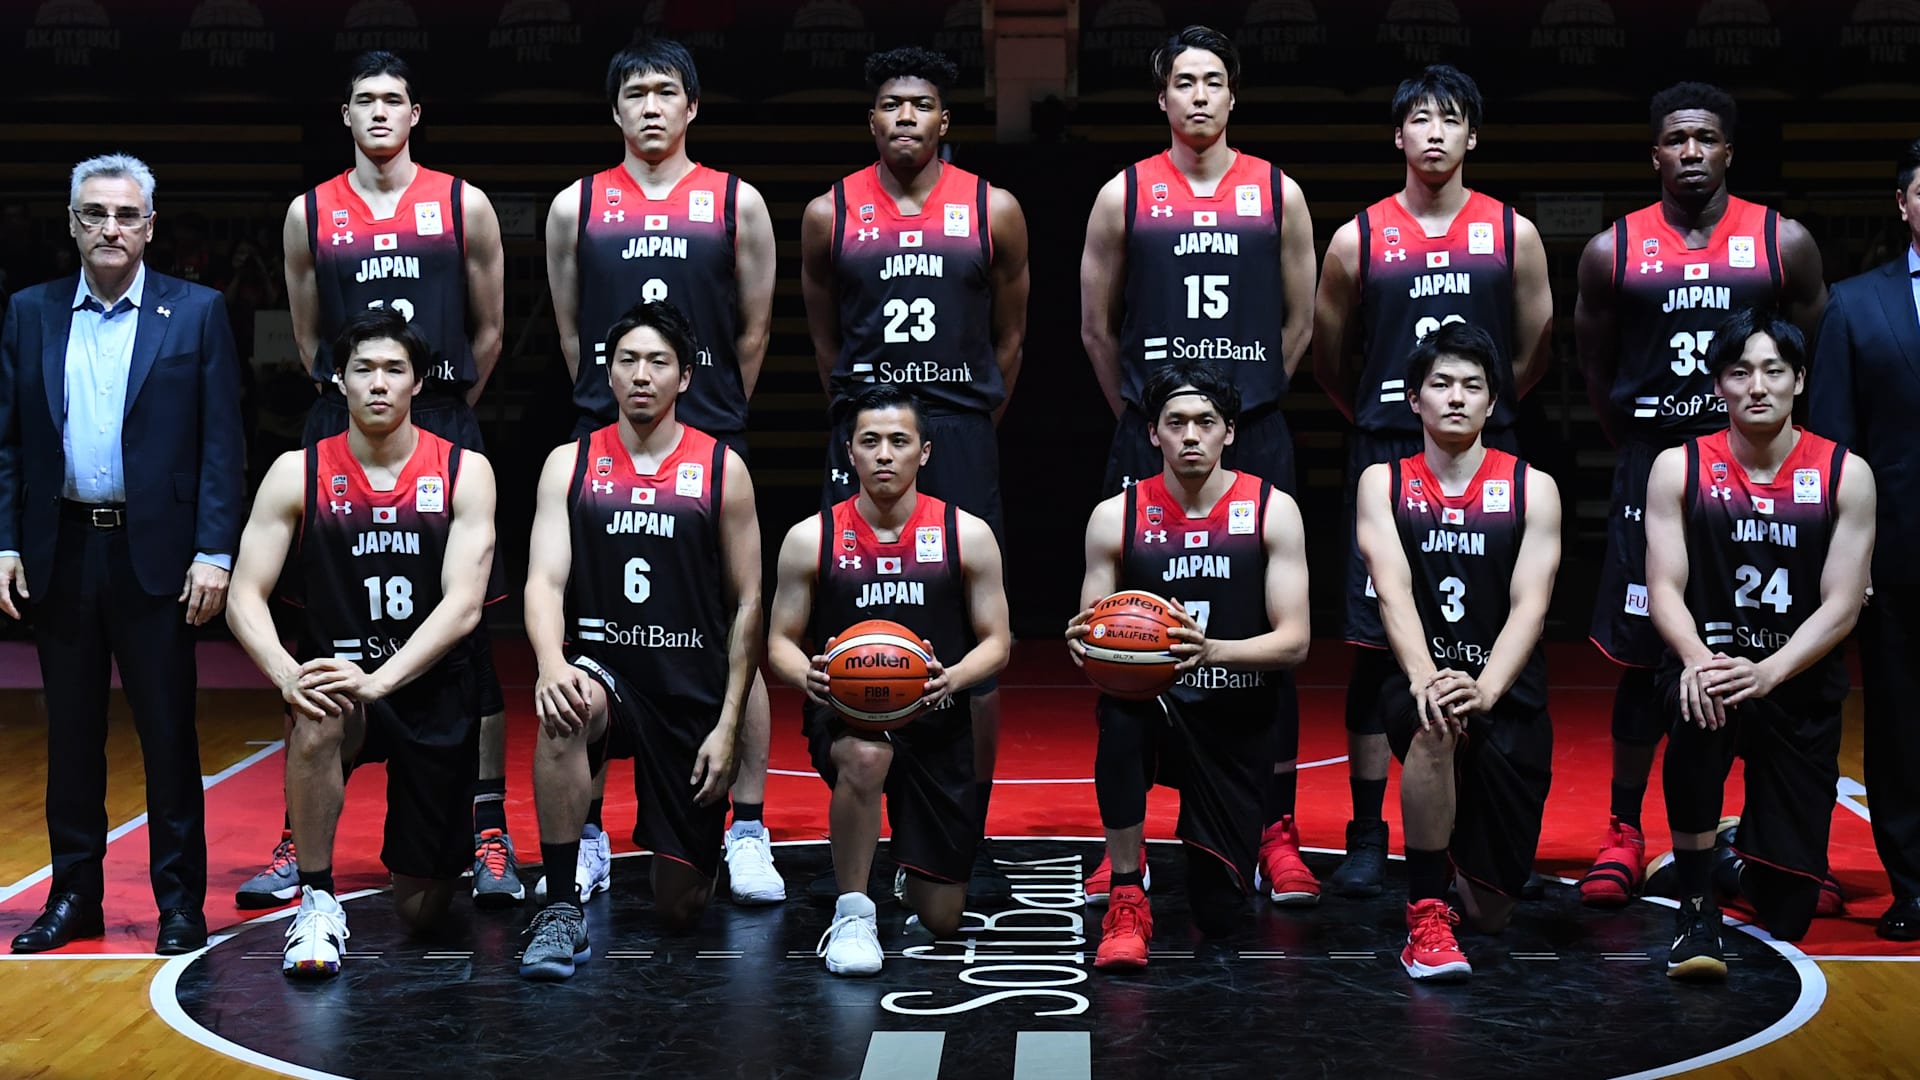 バスケットボール日本代表男子バスケットボール ペア - バスケットボール